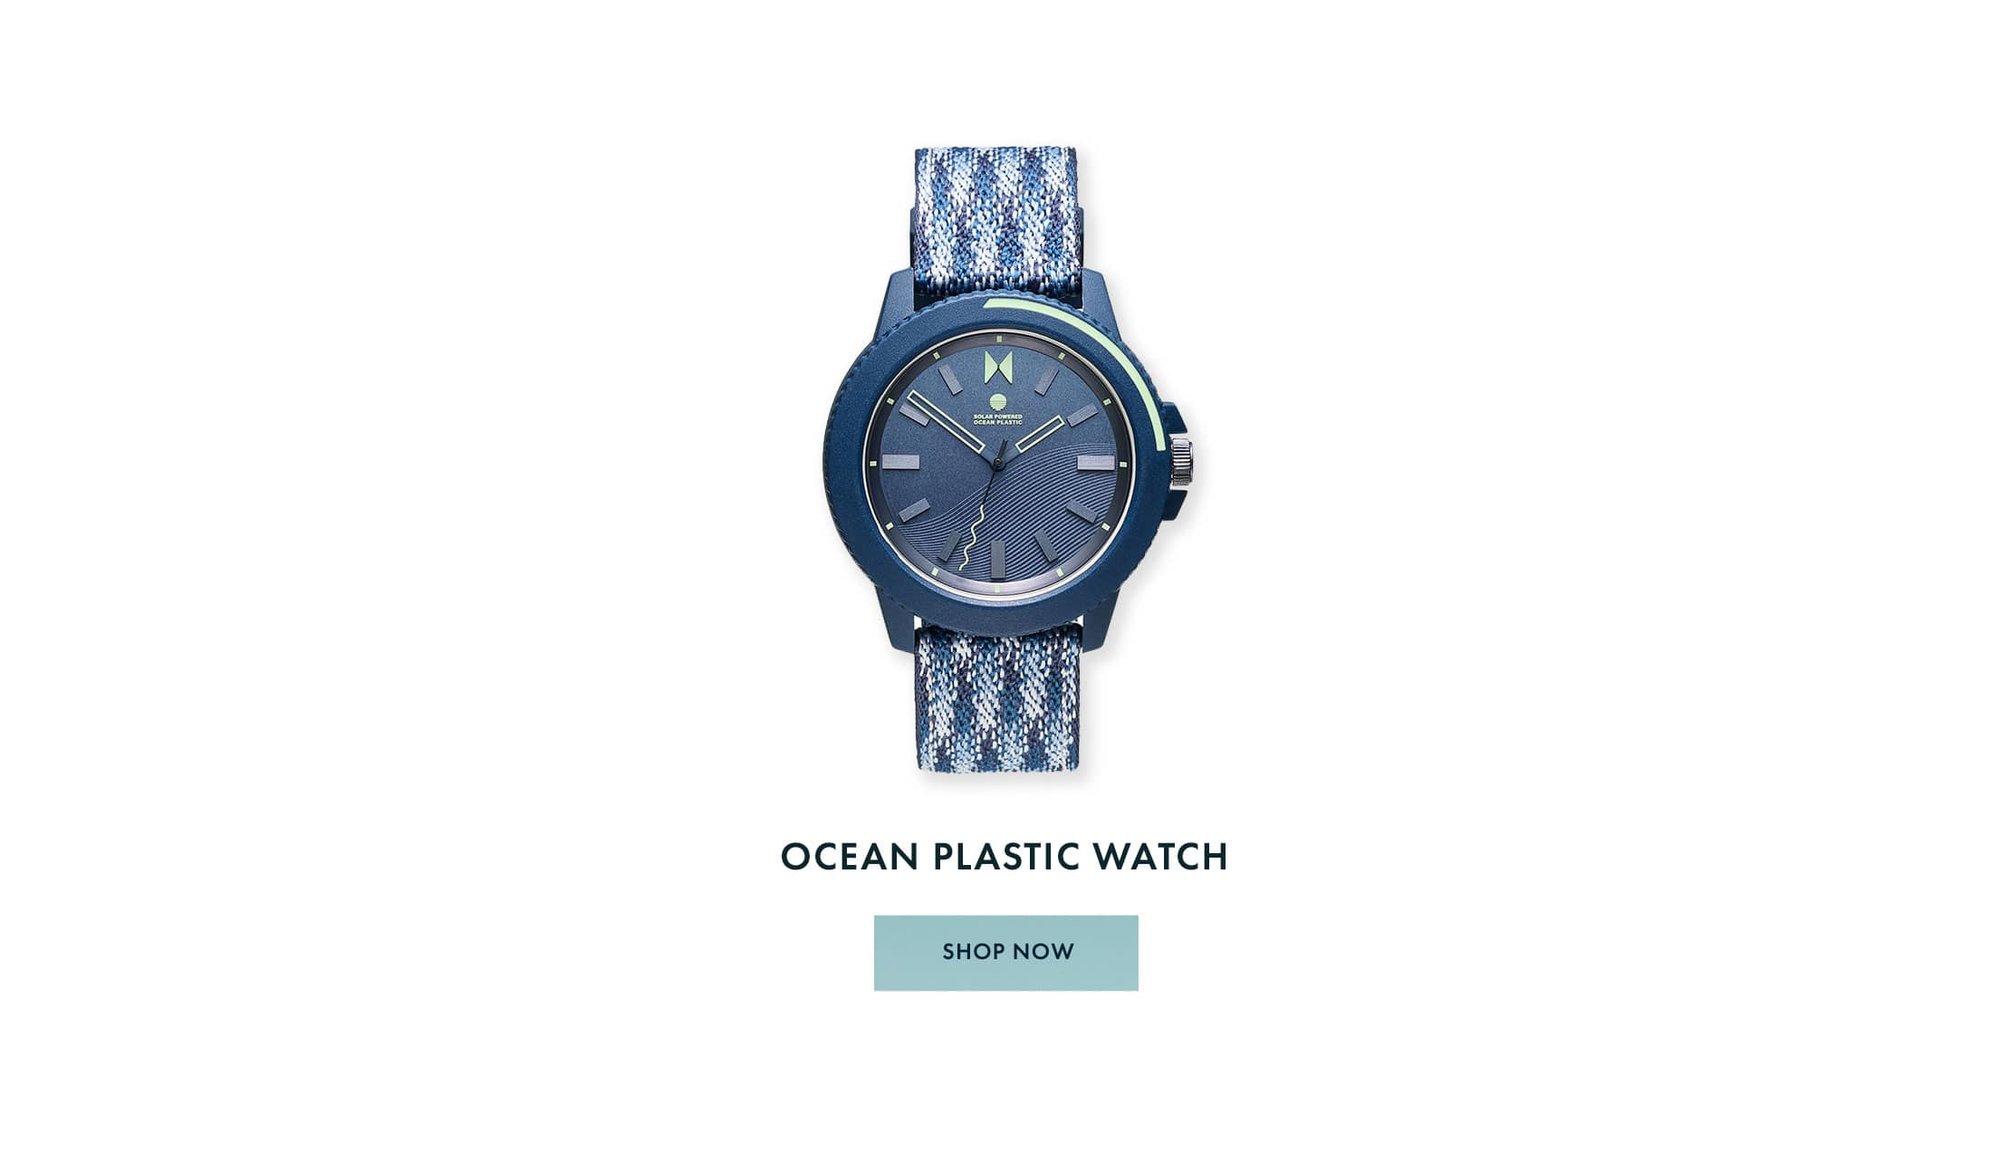 Ocean Plastic Watch Shop Now